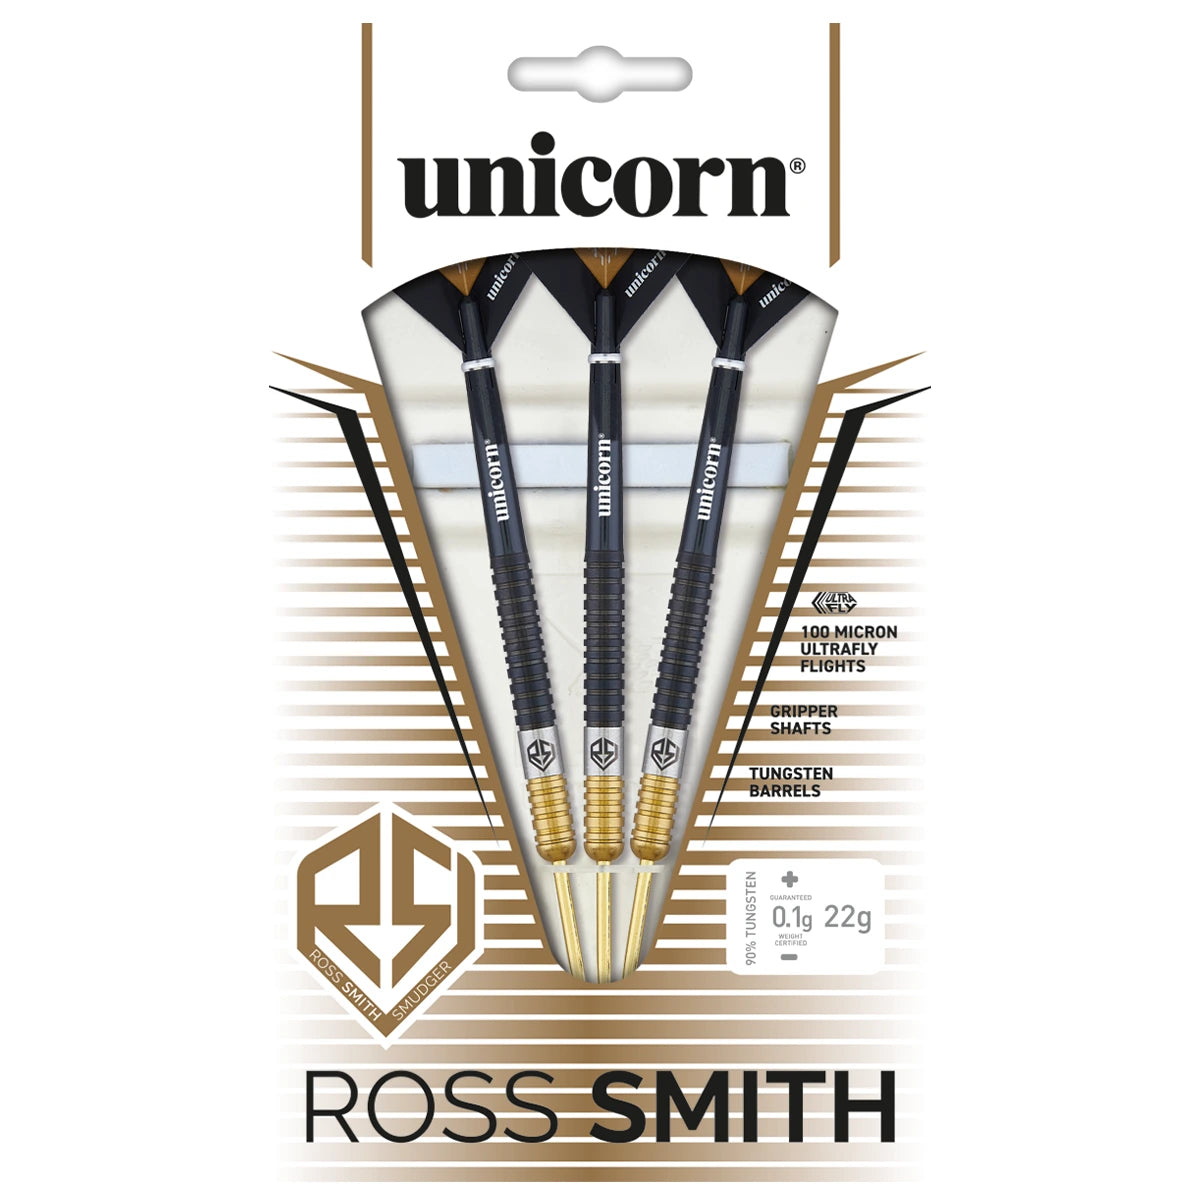 Unicorn Ross Smith TwoTone 90% Tungsten 24g Darts